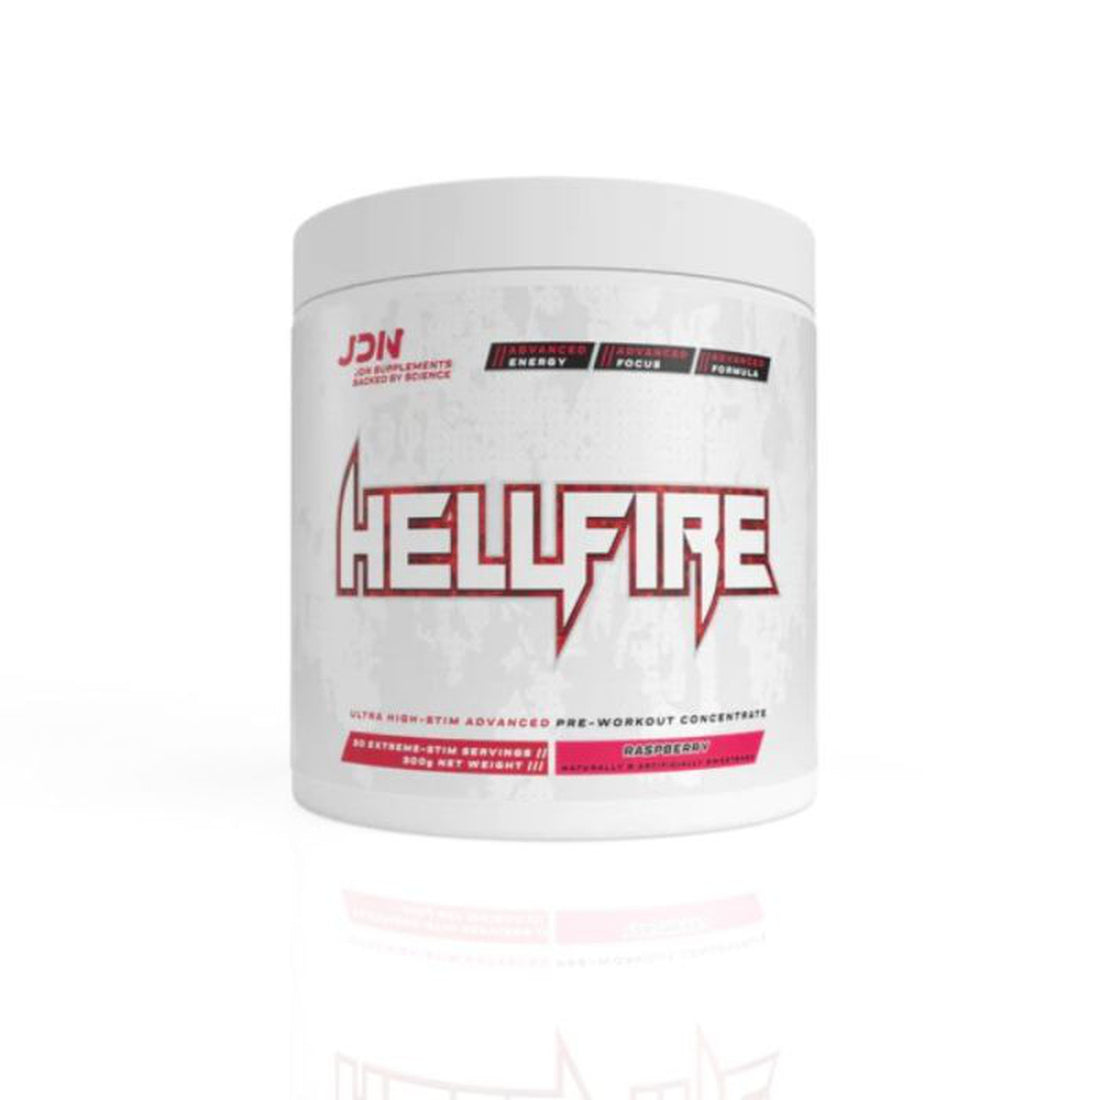 JDN Hellfire Pre Workout